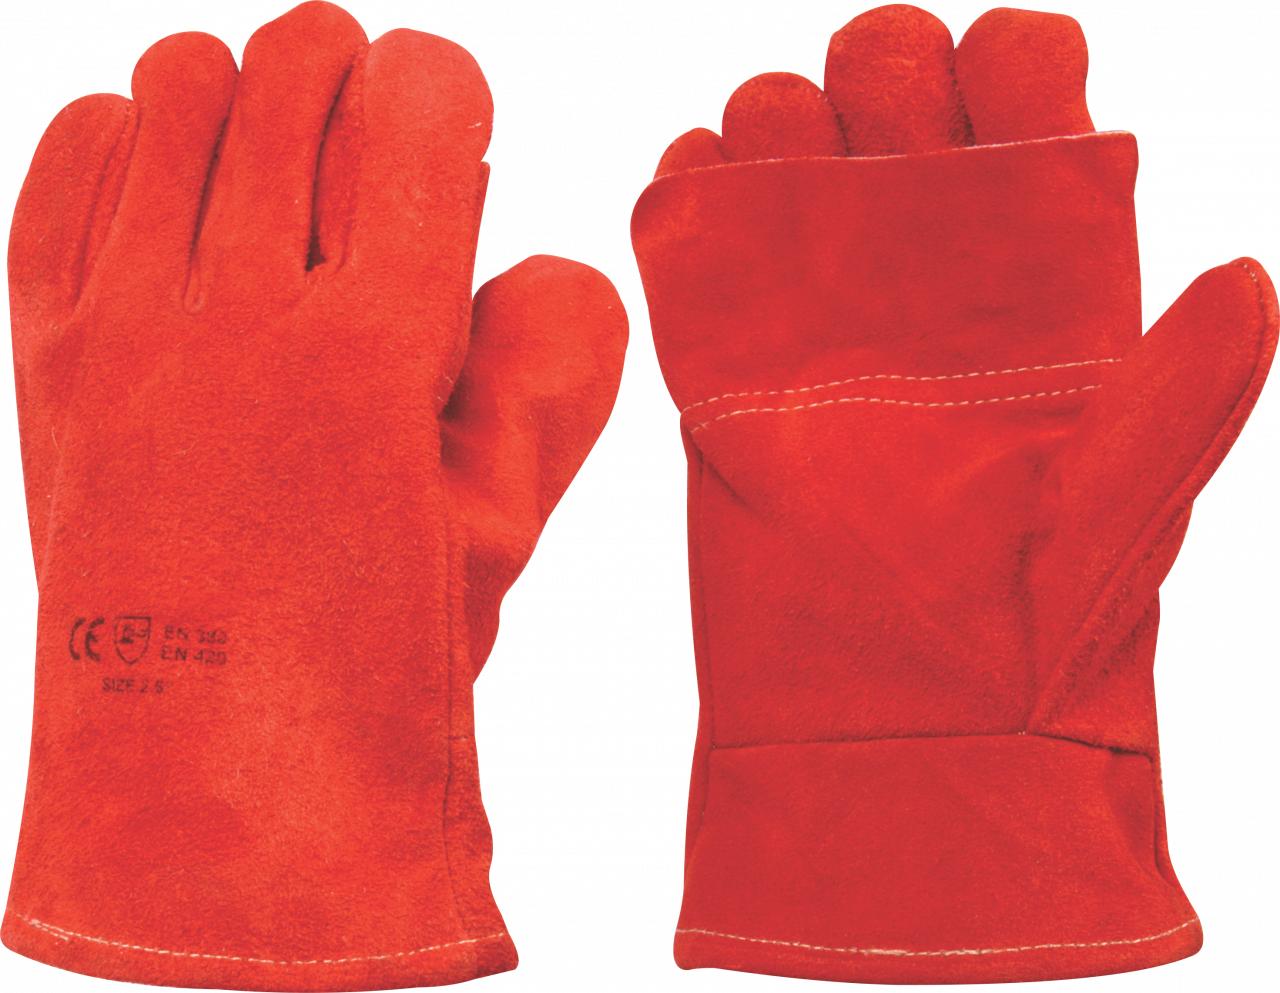 Leather Glove Heat Red Cuff 2.5 inch